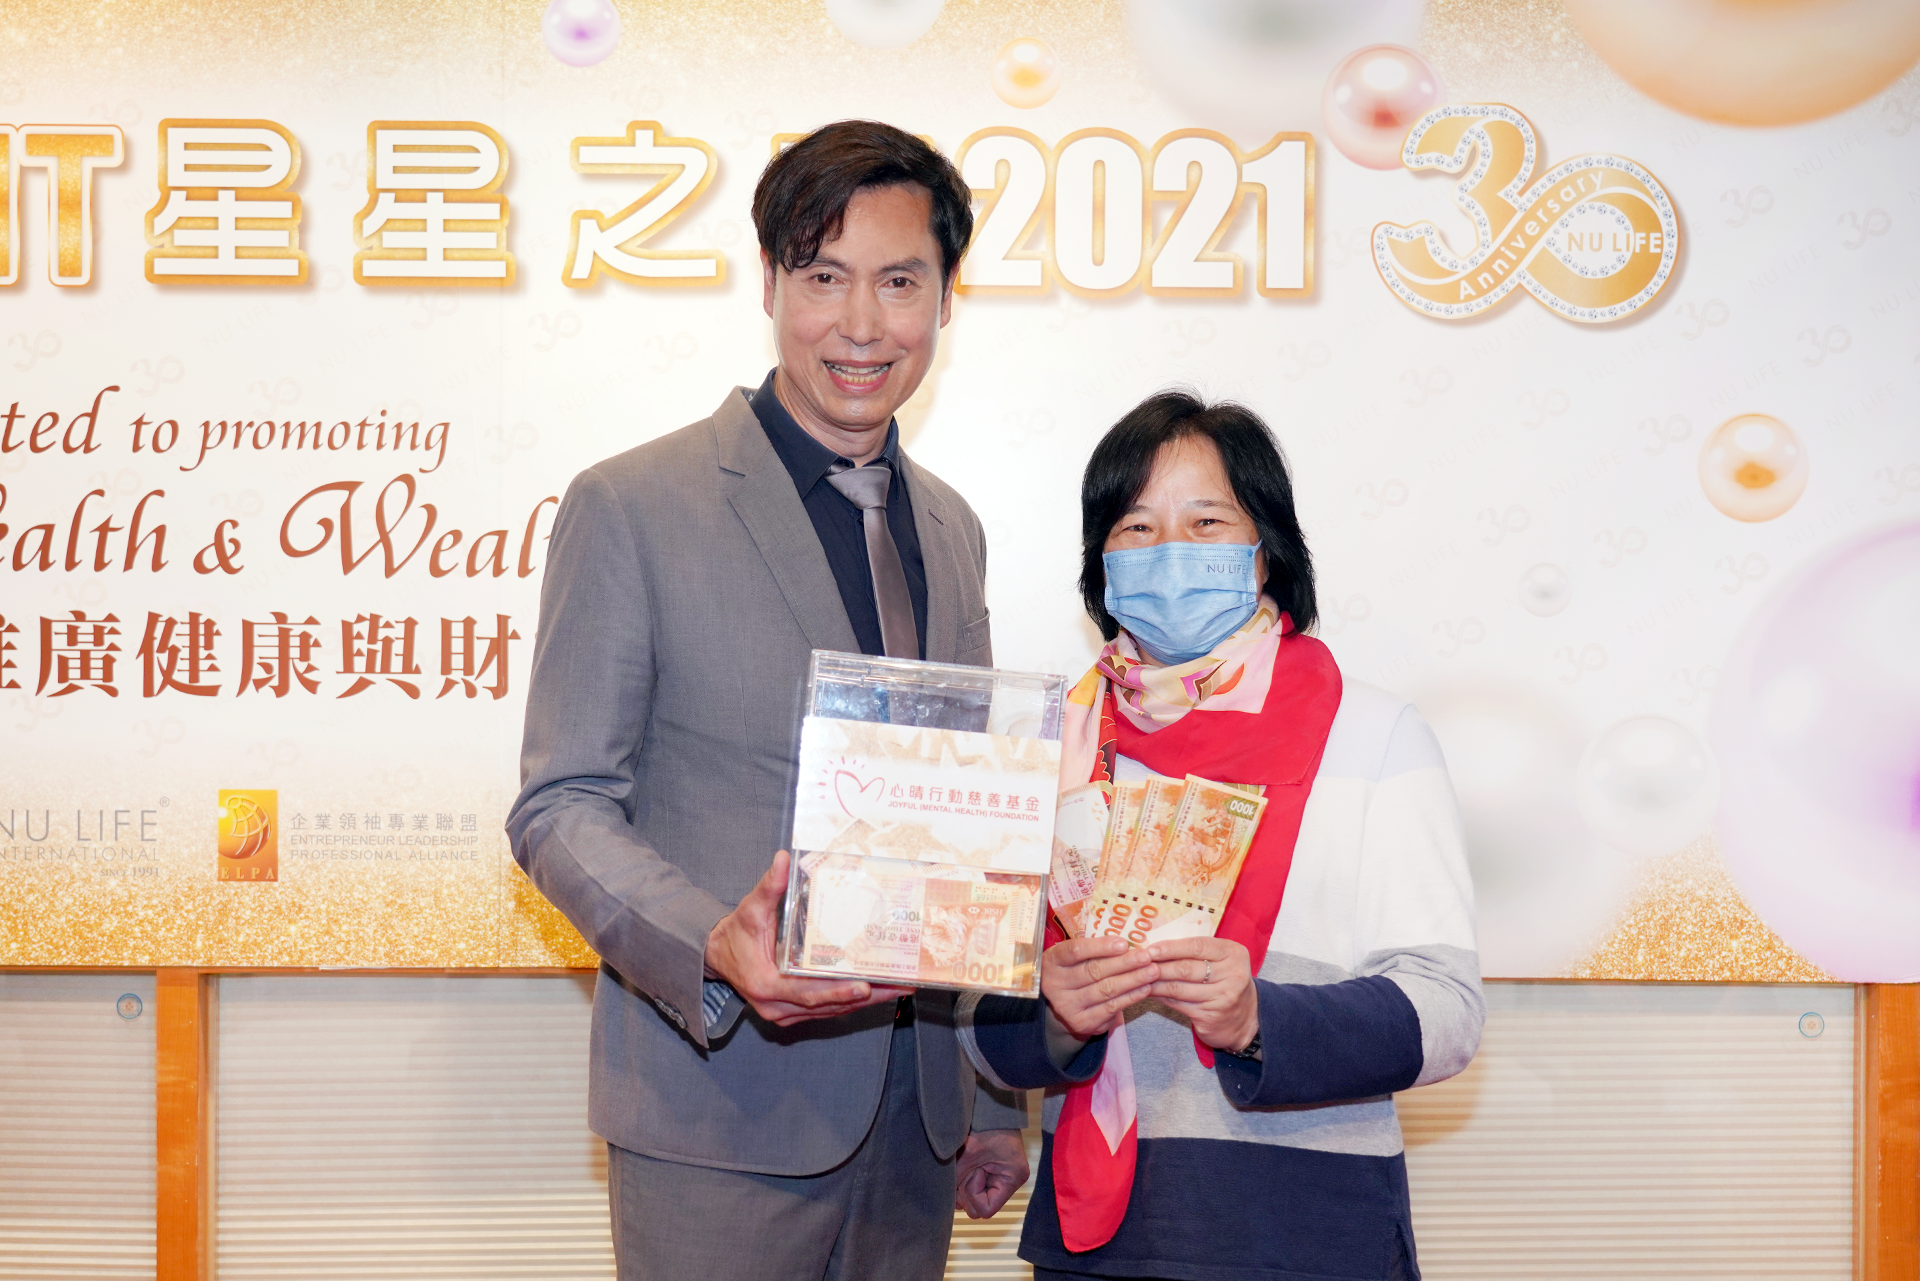 恭賀鄧寶娟女士從星級百萬富翁遊戲贏取HK$10,000獎金並與公司合共損助HK$12000予「心晴行動慈善基金」